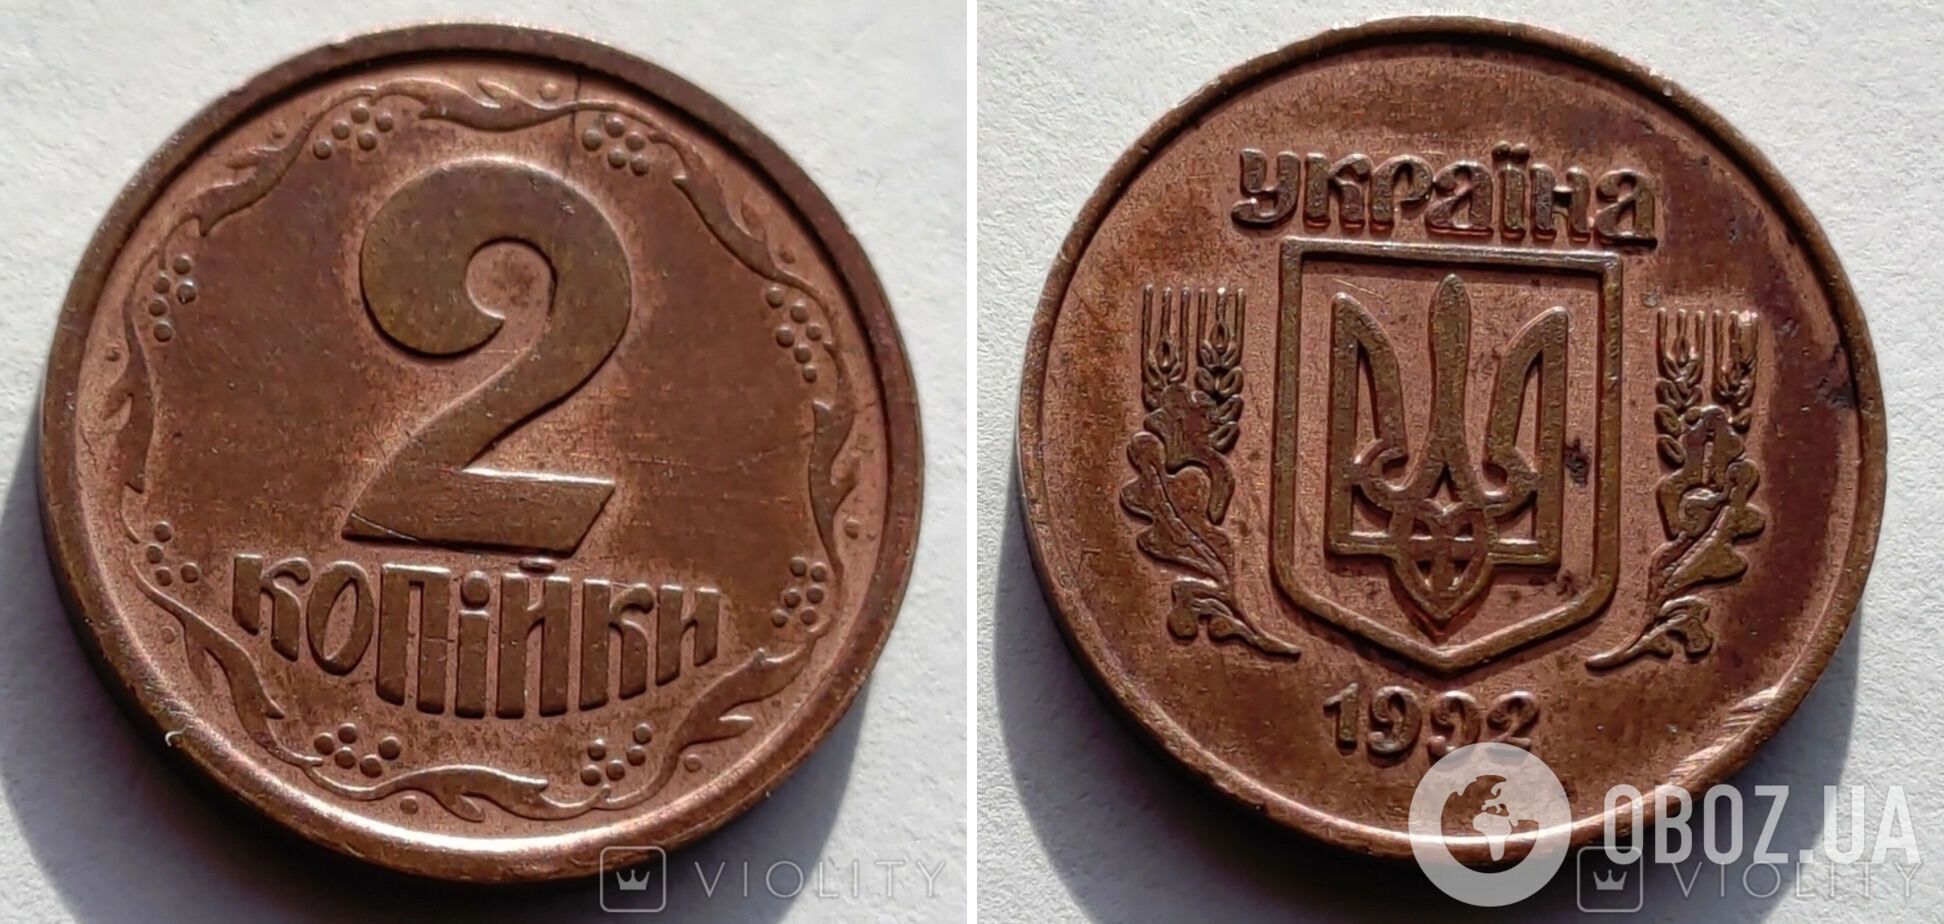 Як виглядає монета